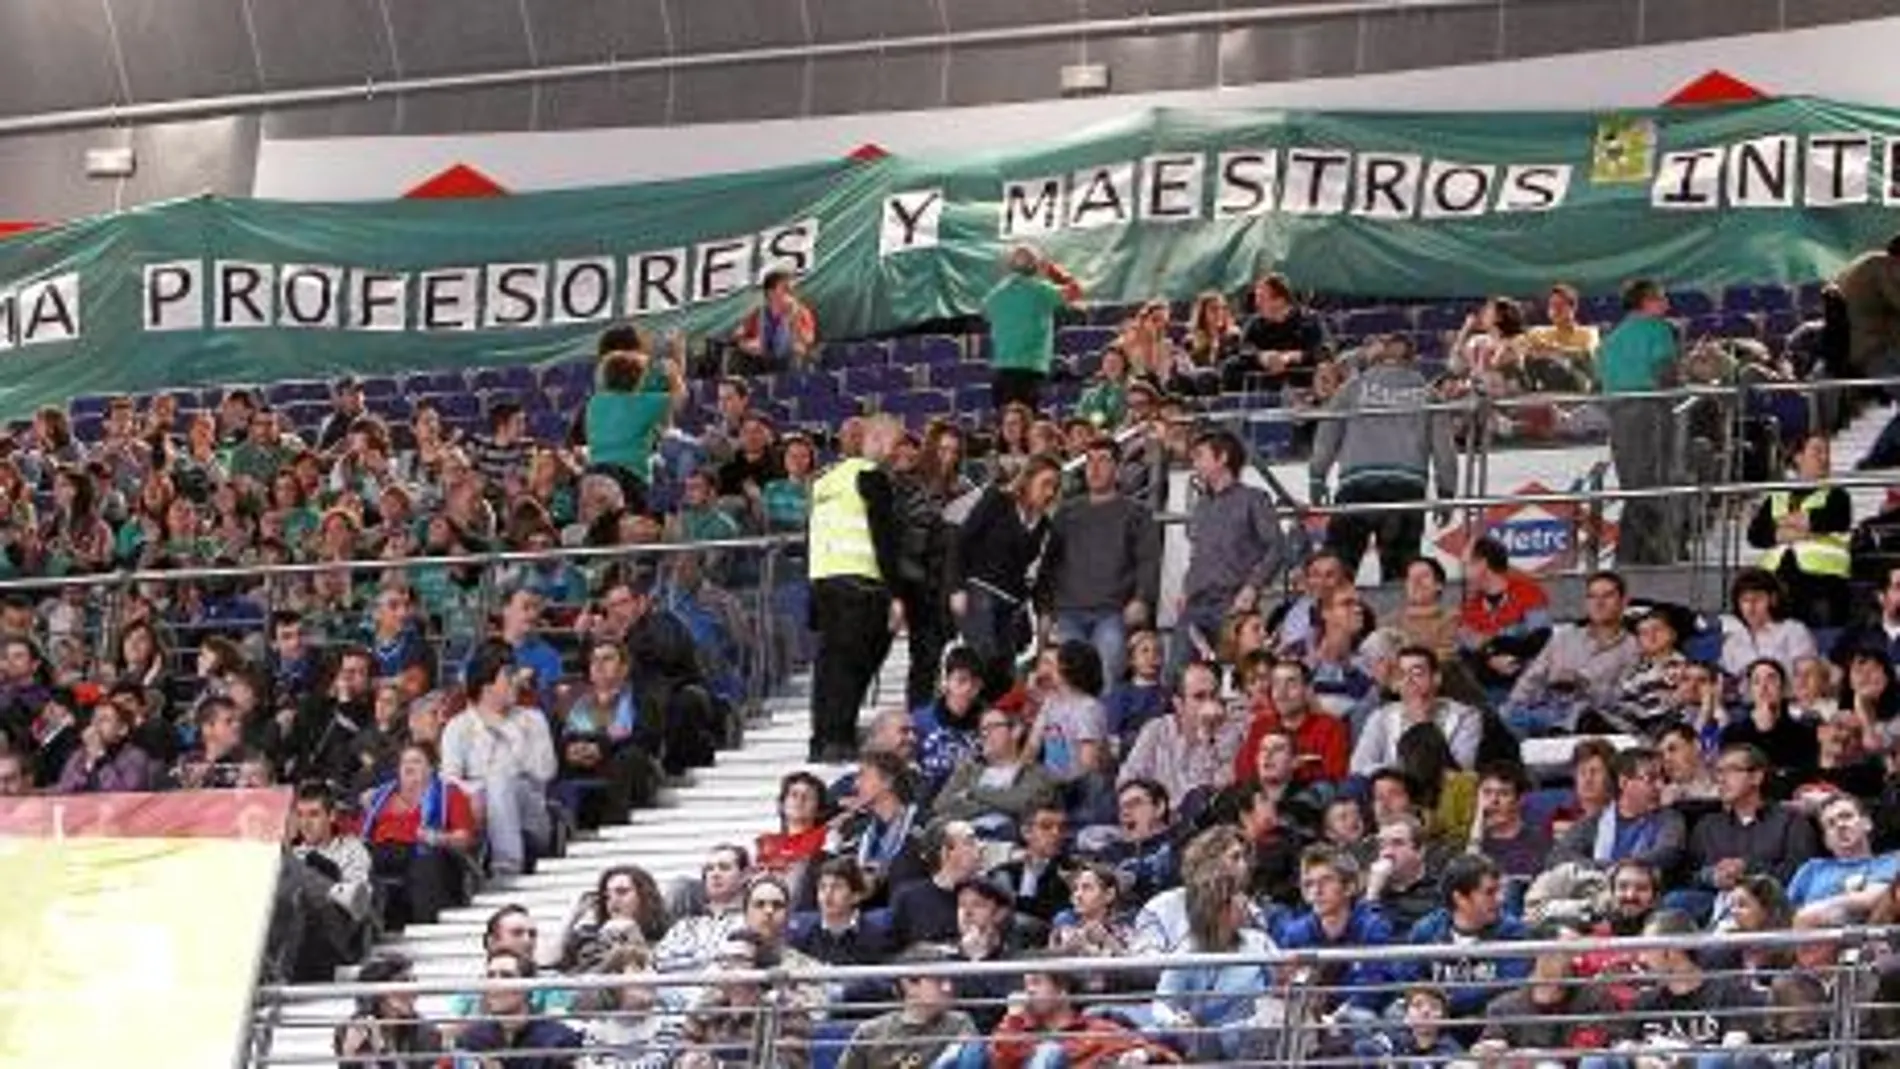 La Plataforma de Profesores y Maestros Interinos desplegó ayer una pancarta en el partido entre Asefa Estudiantes y Unicaja Málaga, en el Palacio de Deportes